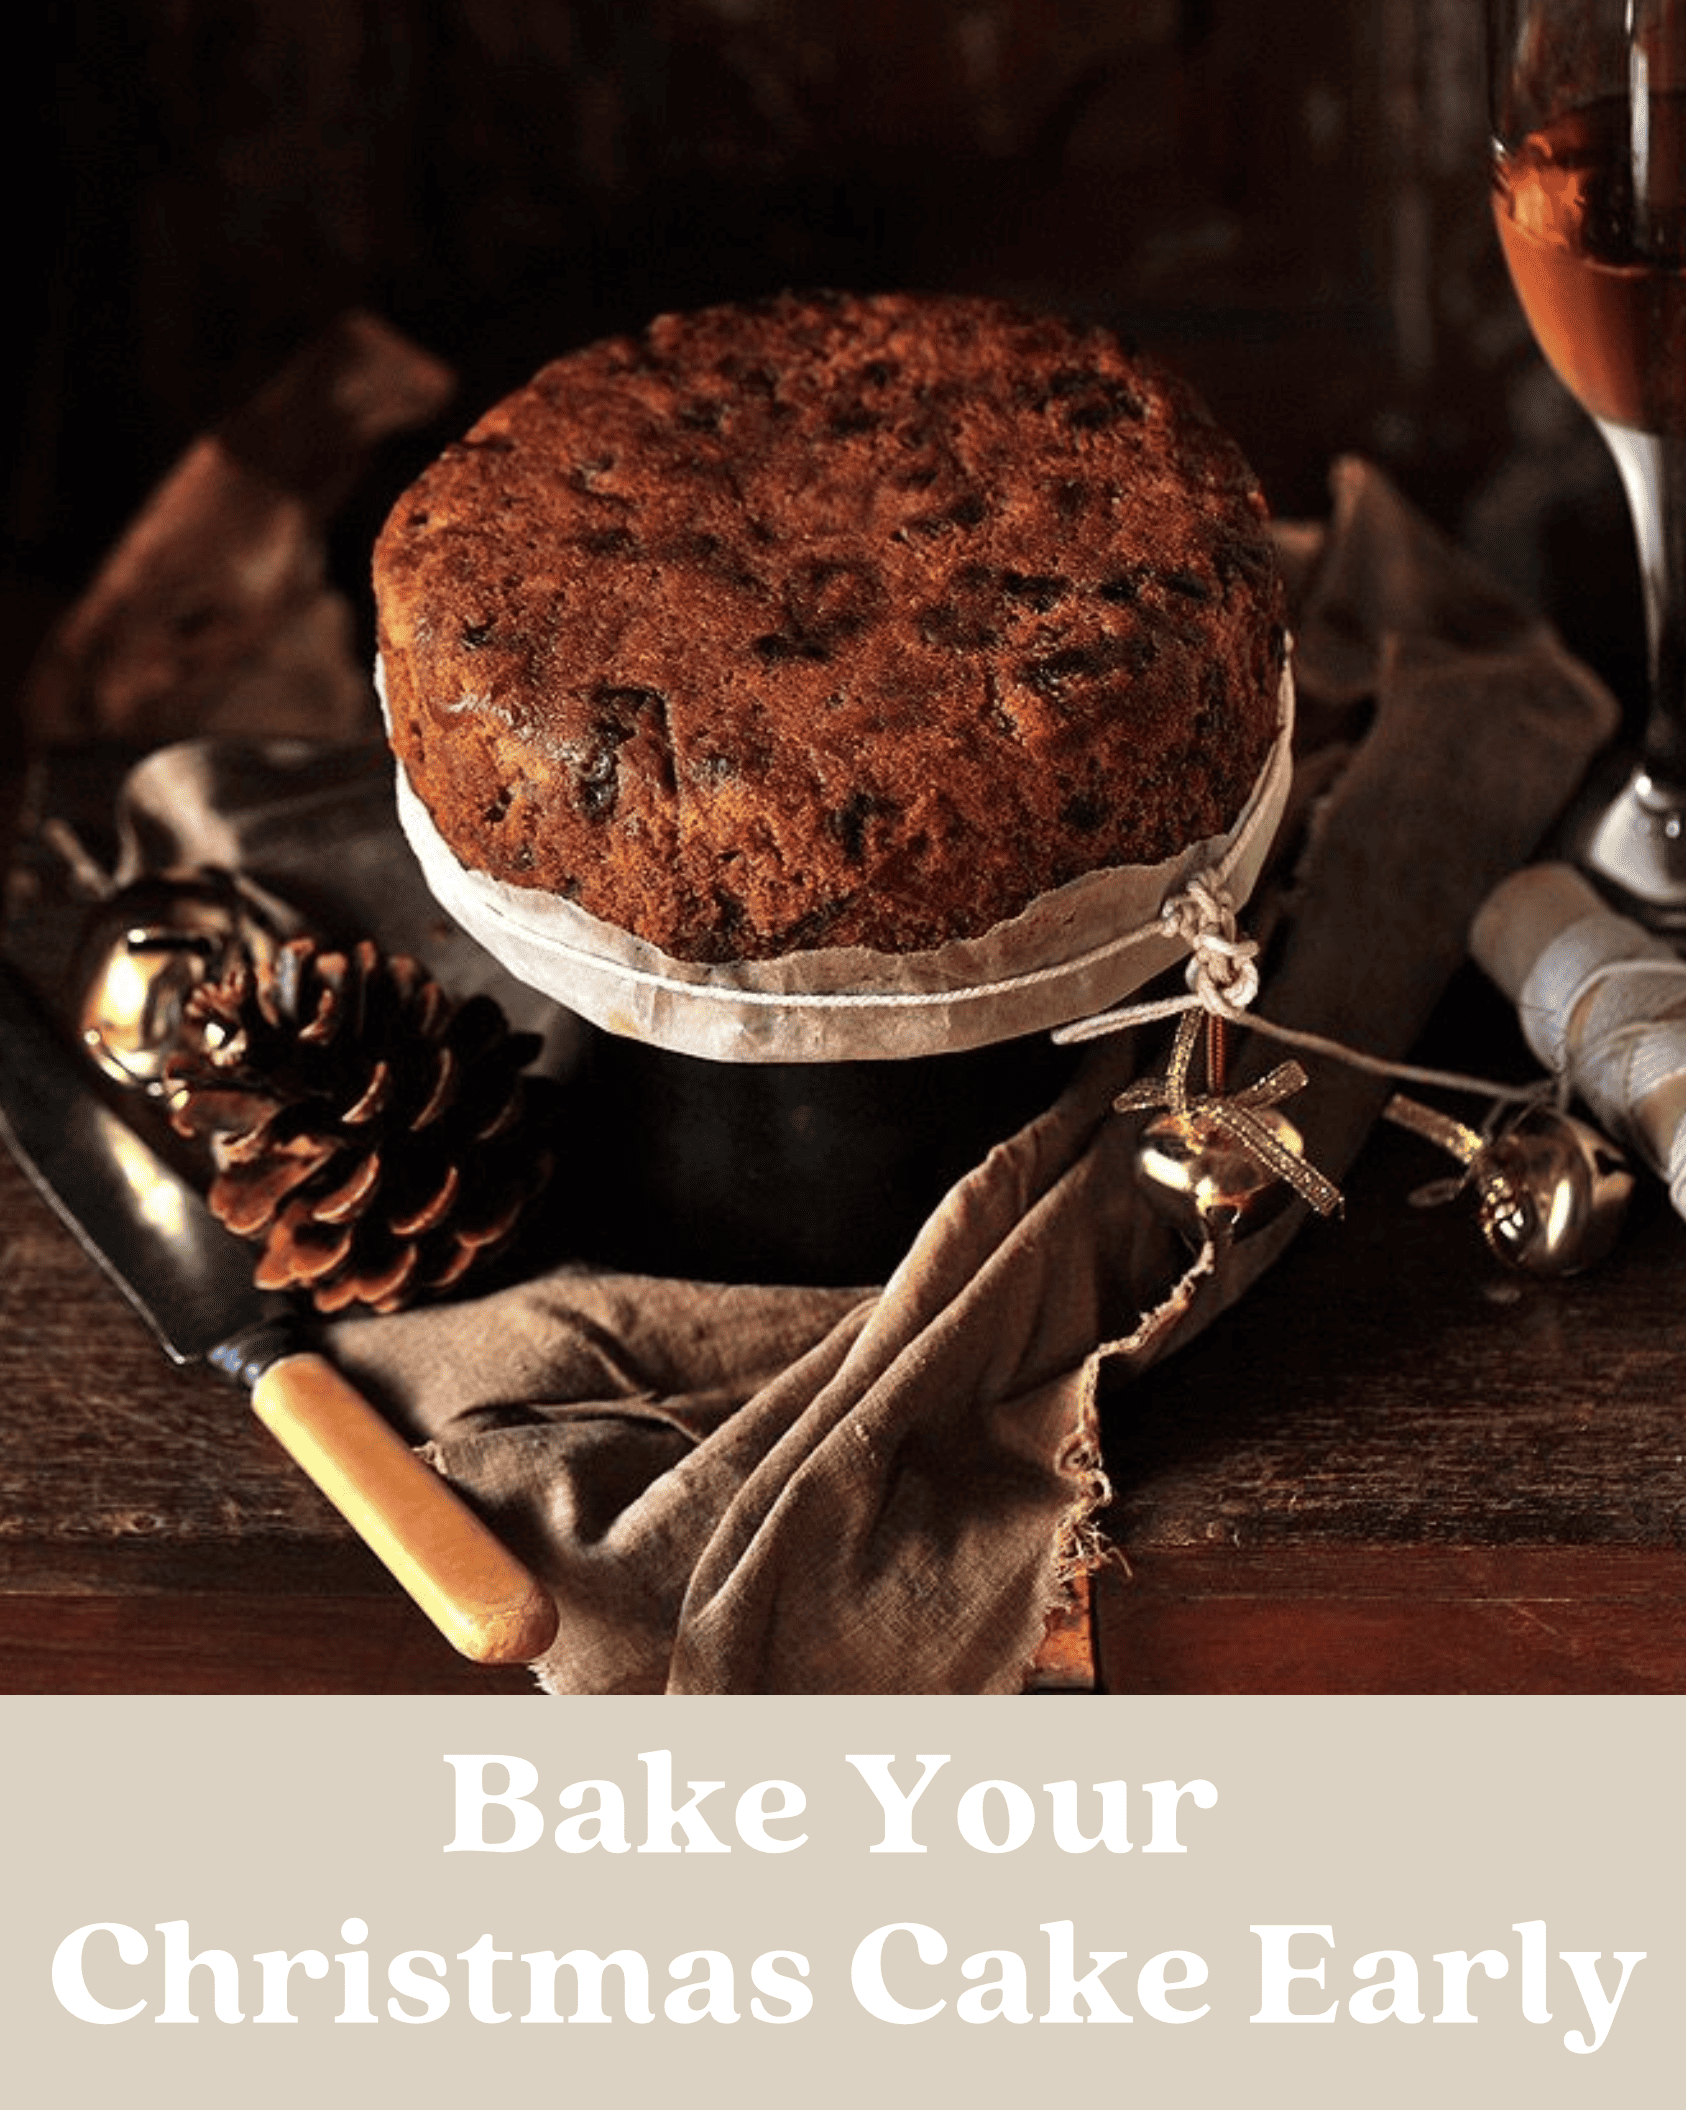 bake your Christmas cake early blog